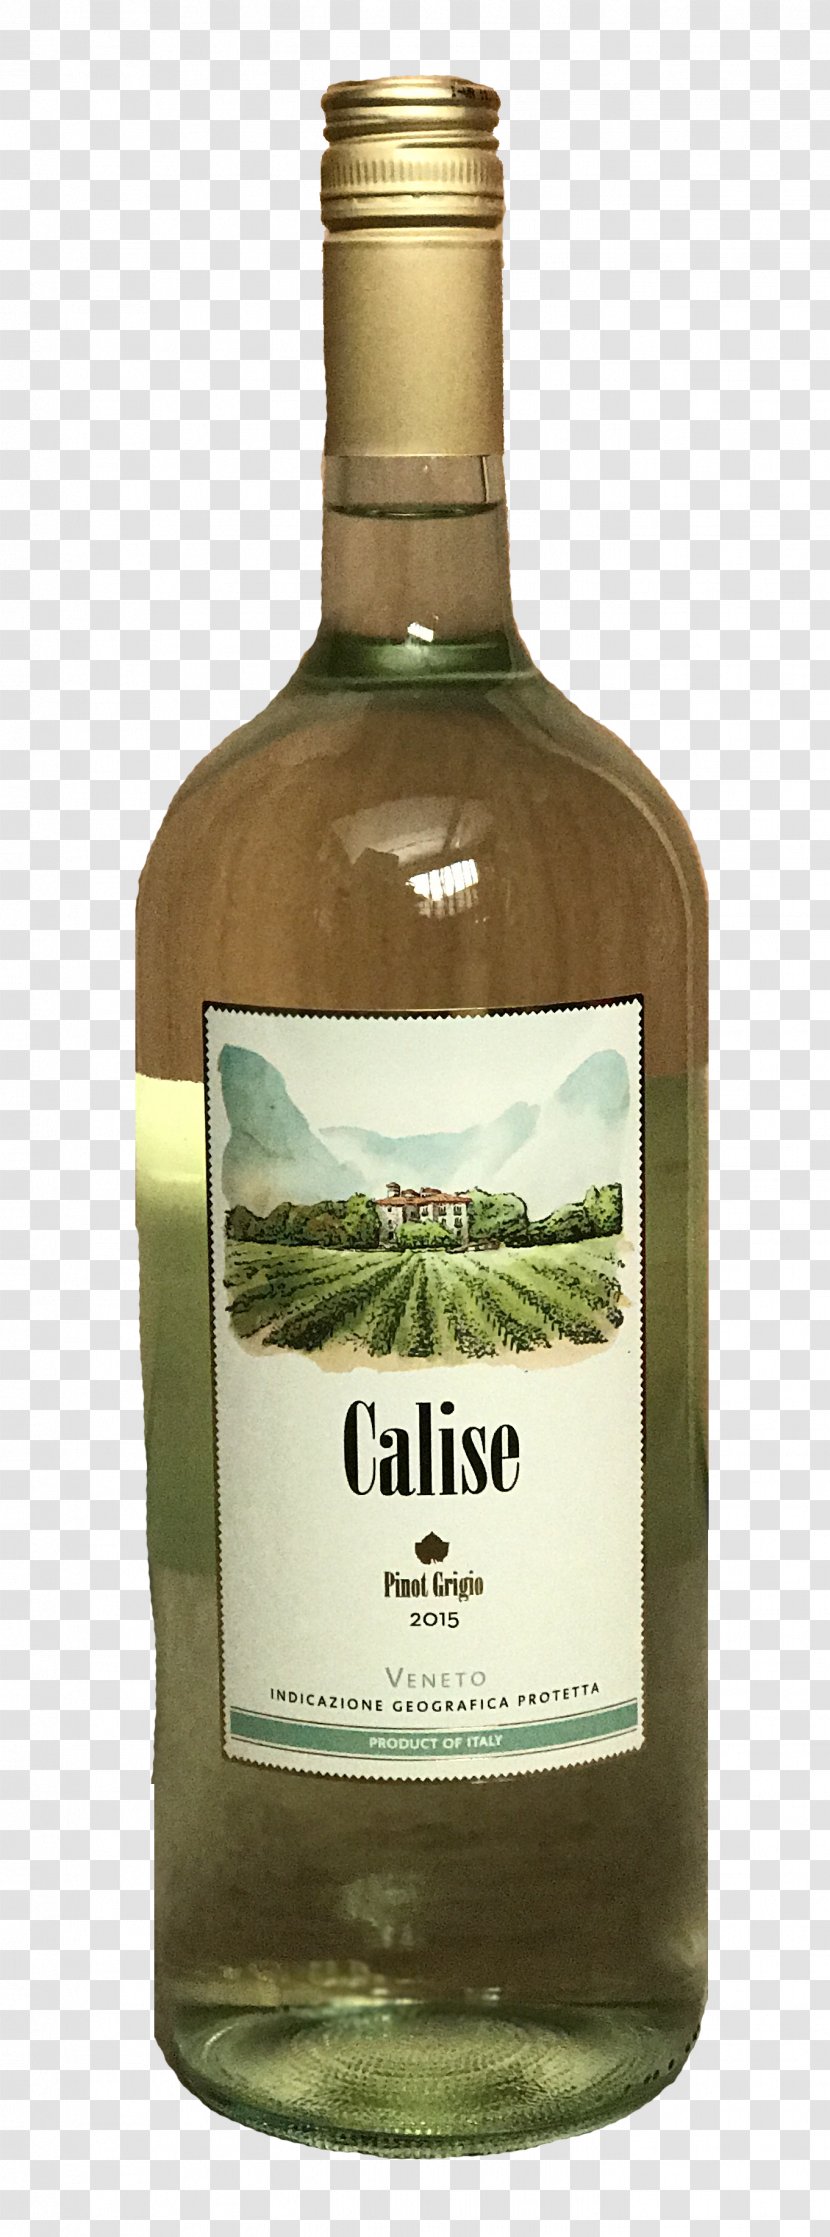 Glass Bottle Wine - Distilled Beverage Transparent PNG